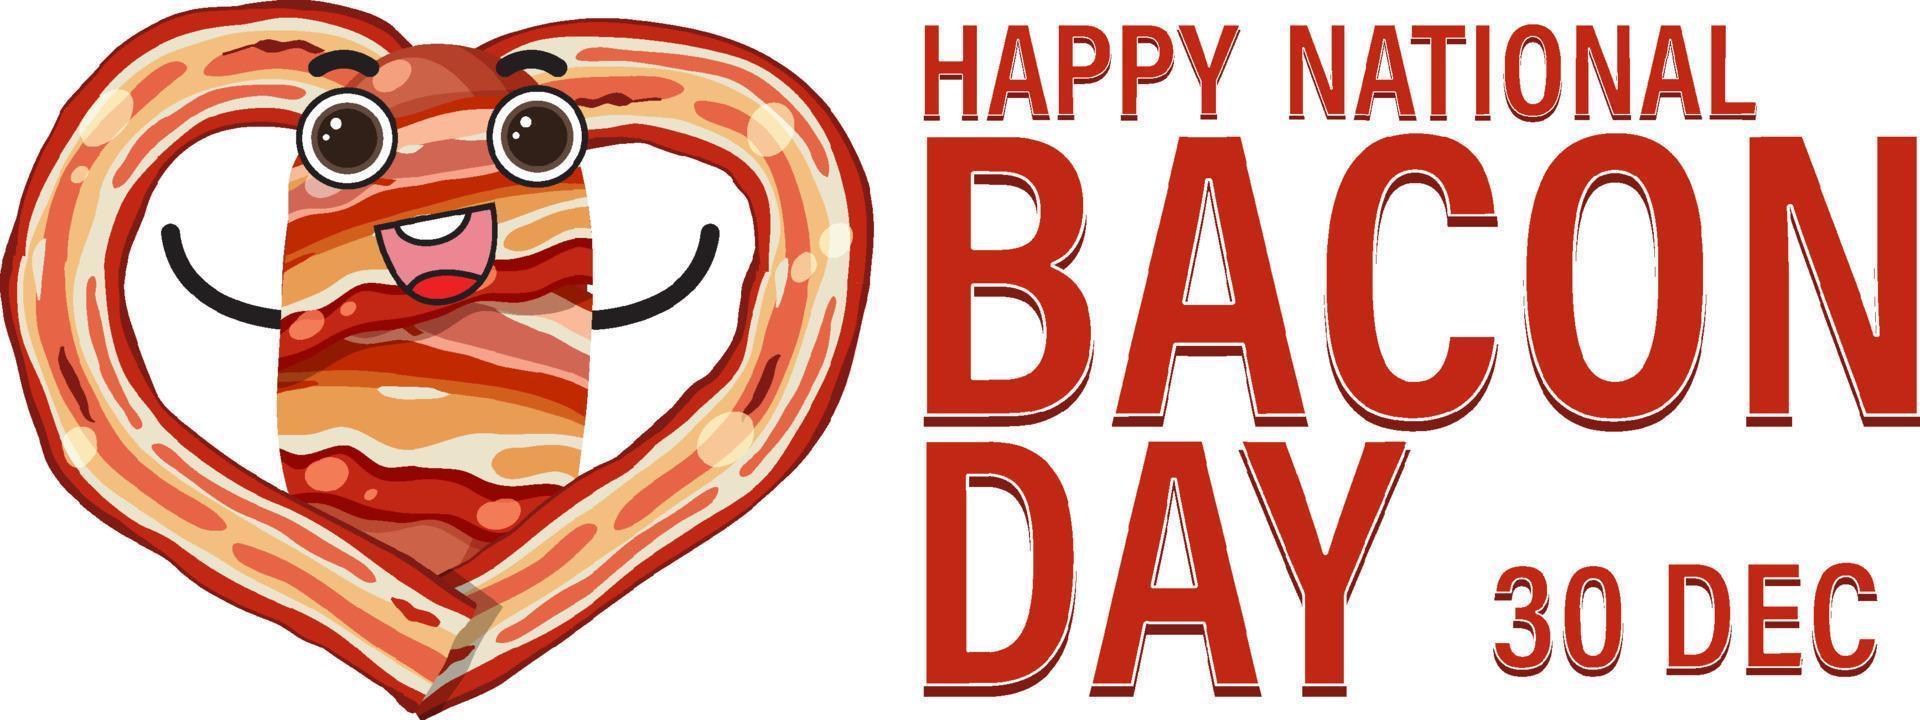 modelo de banner do dia internacional do bacon vetor